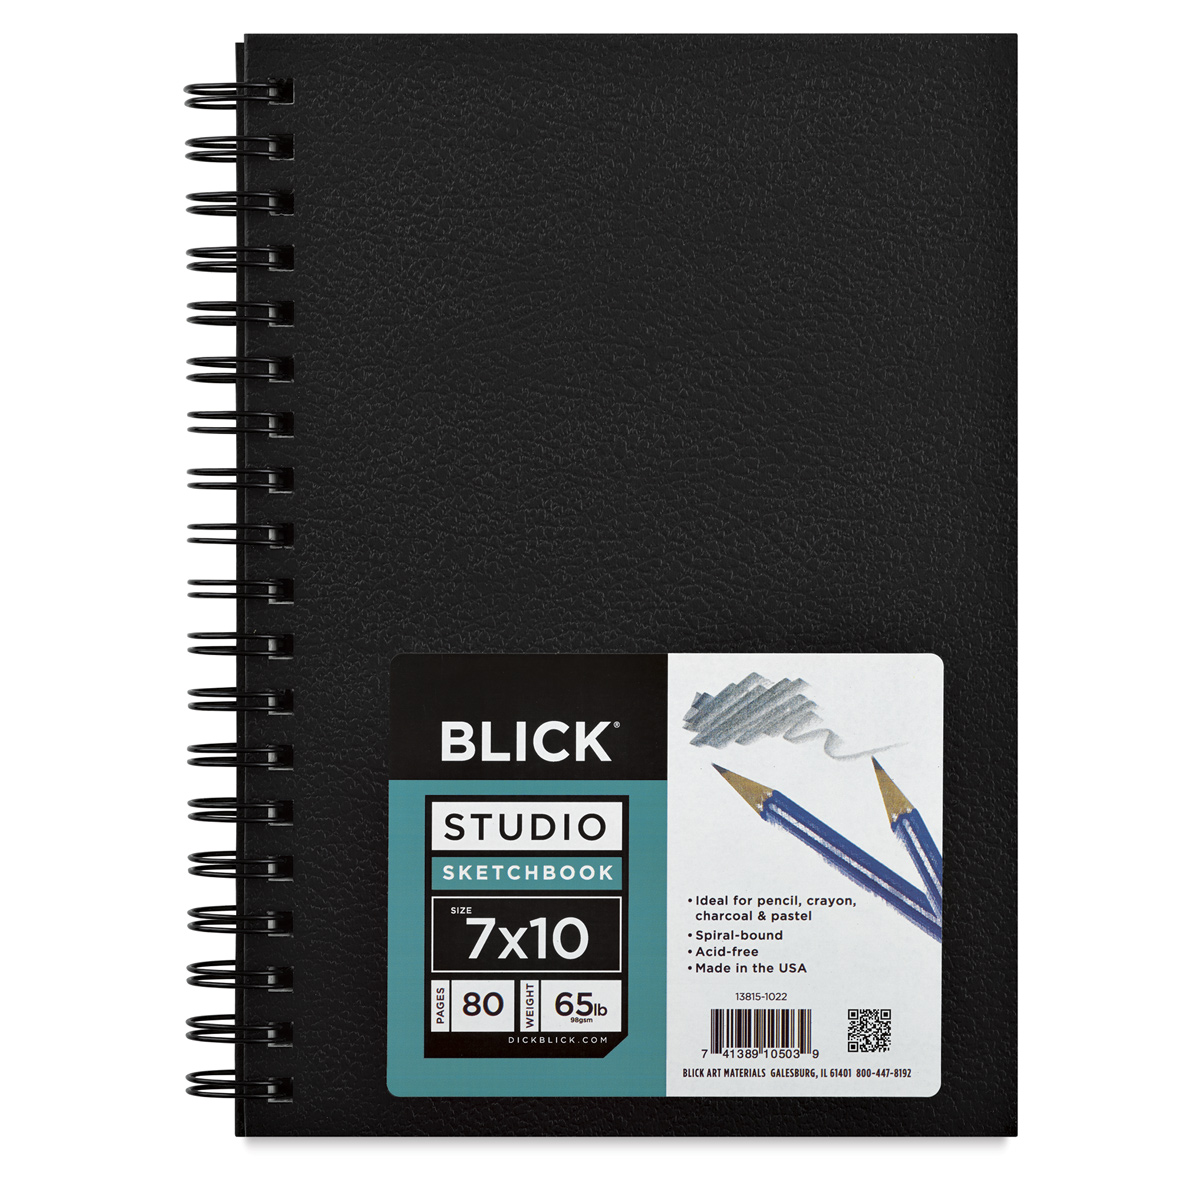 Blick Studio Hardbound Sketchbook